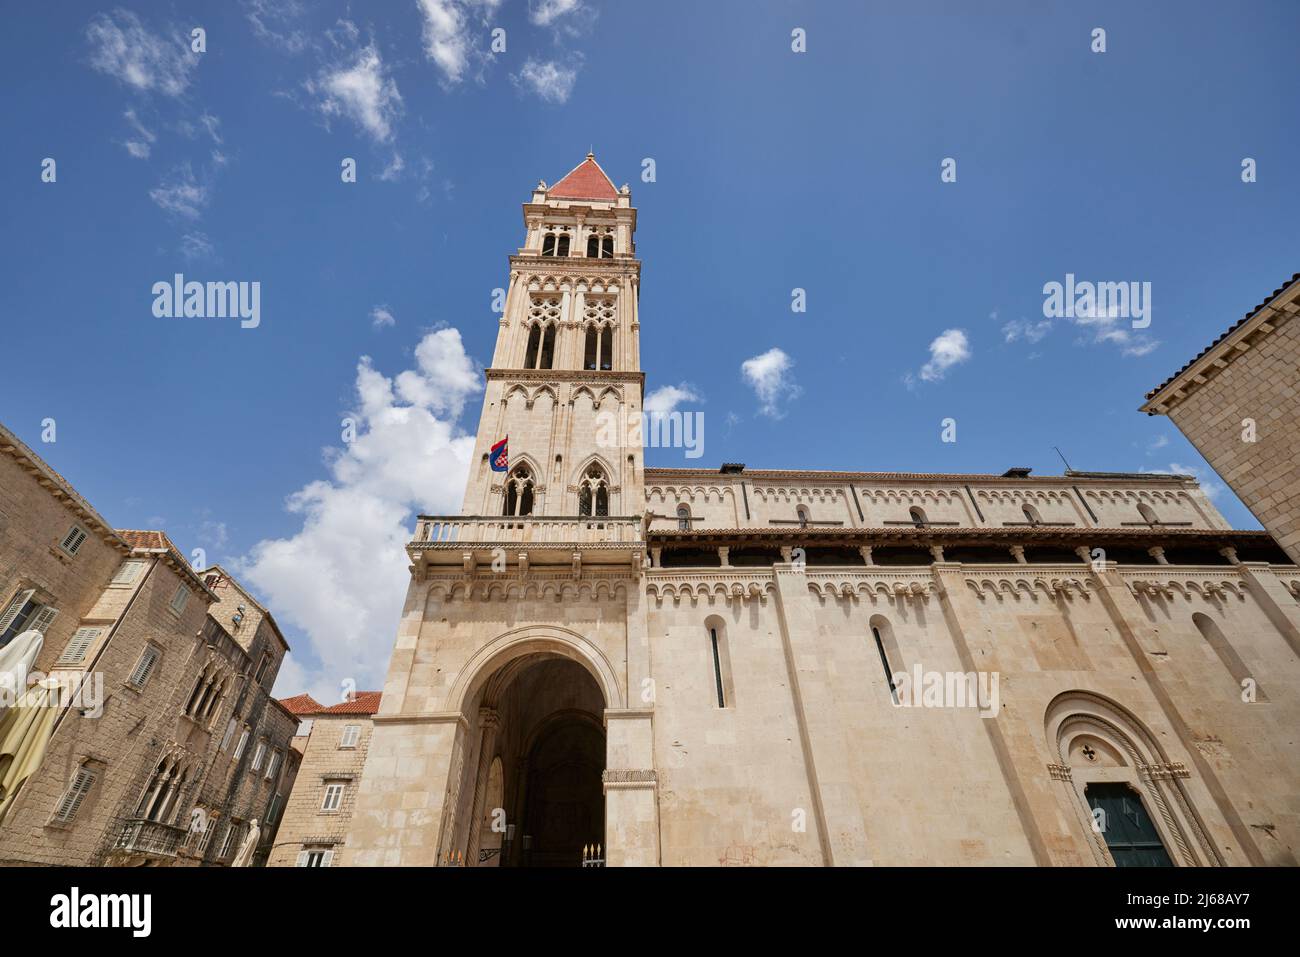 La città di Spalato in Croazia nella regione della Dalmazia, Cattedrale di San Lorenzo Foto Stock